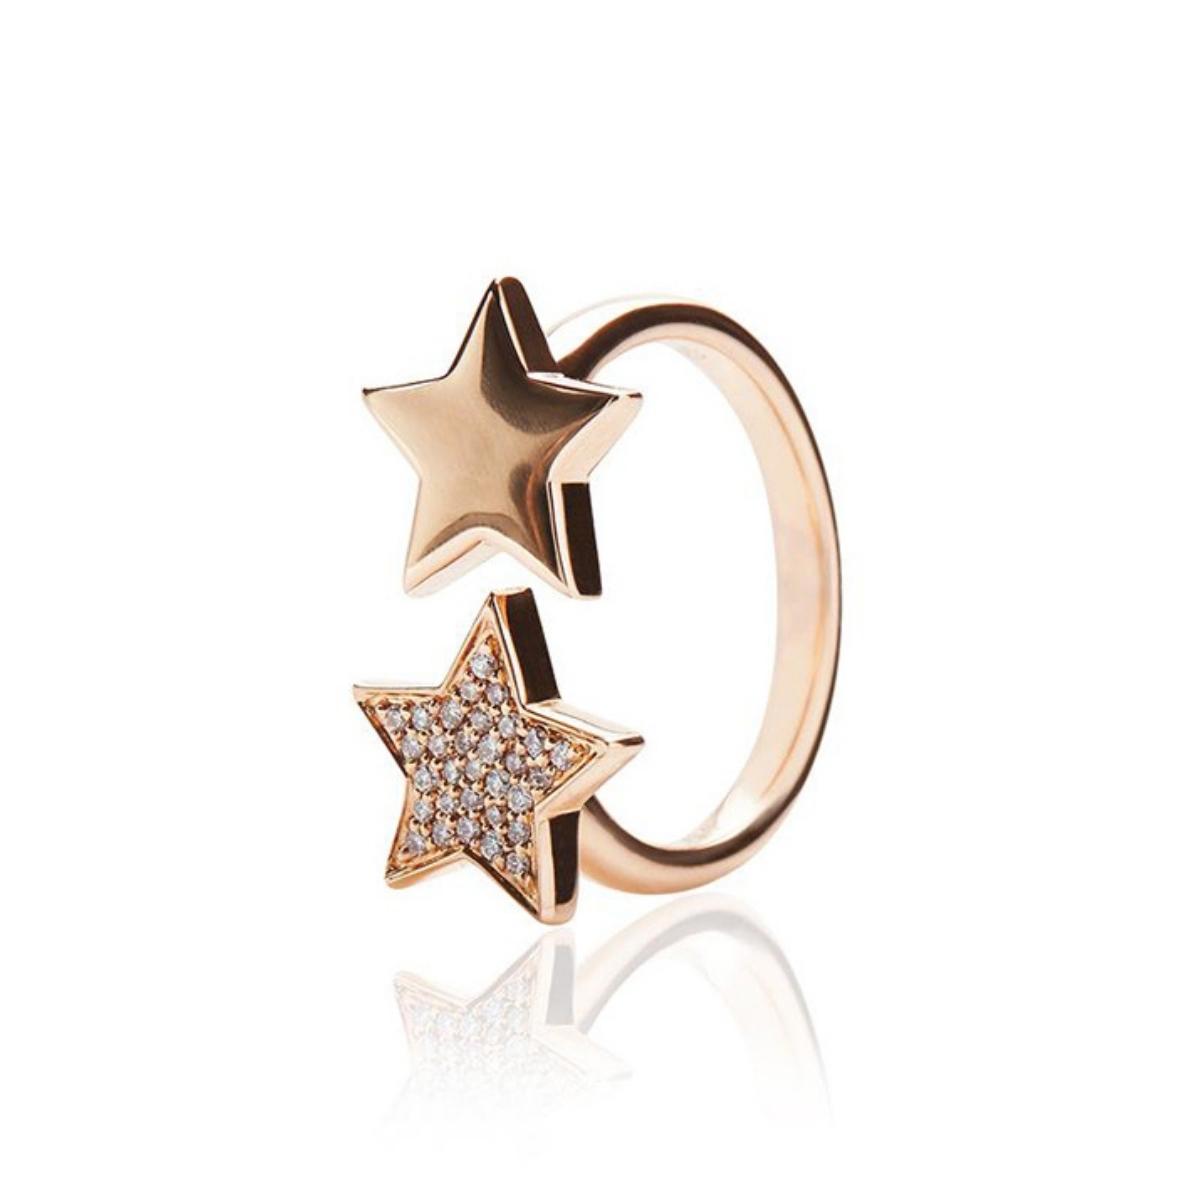 STASIA One Star Diamond Ring